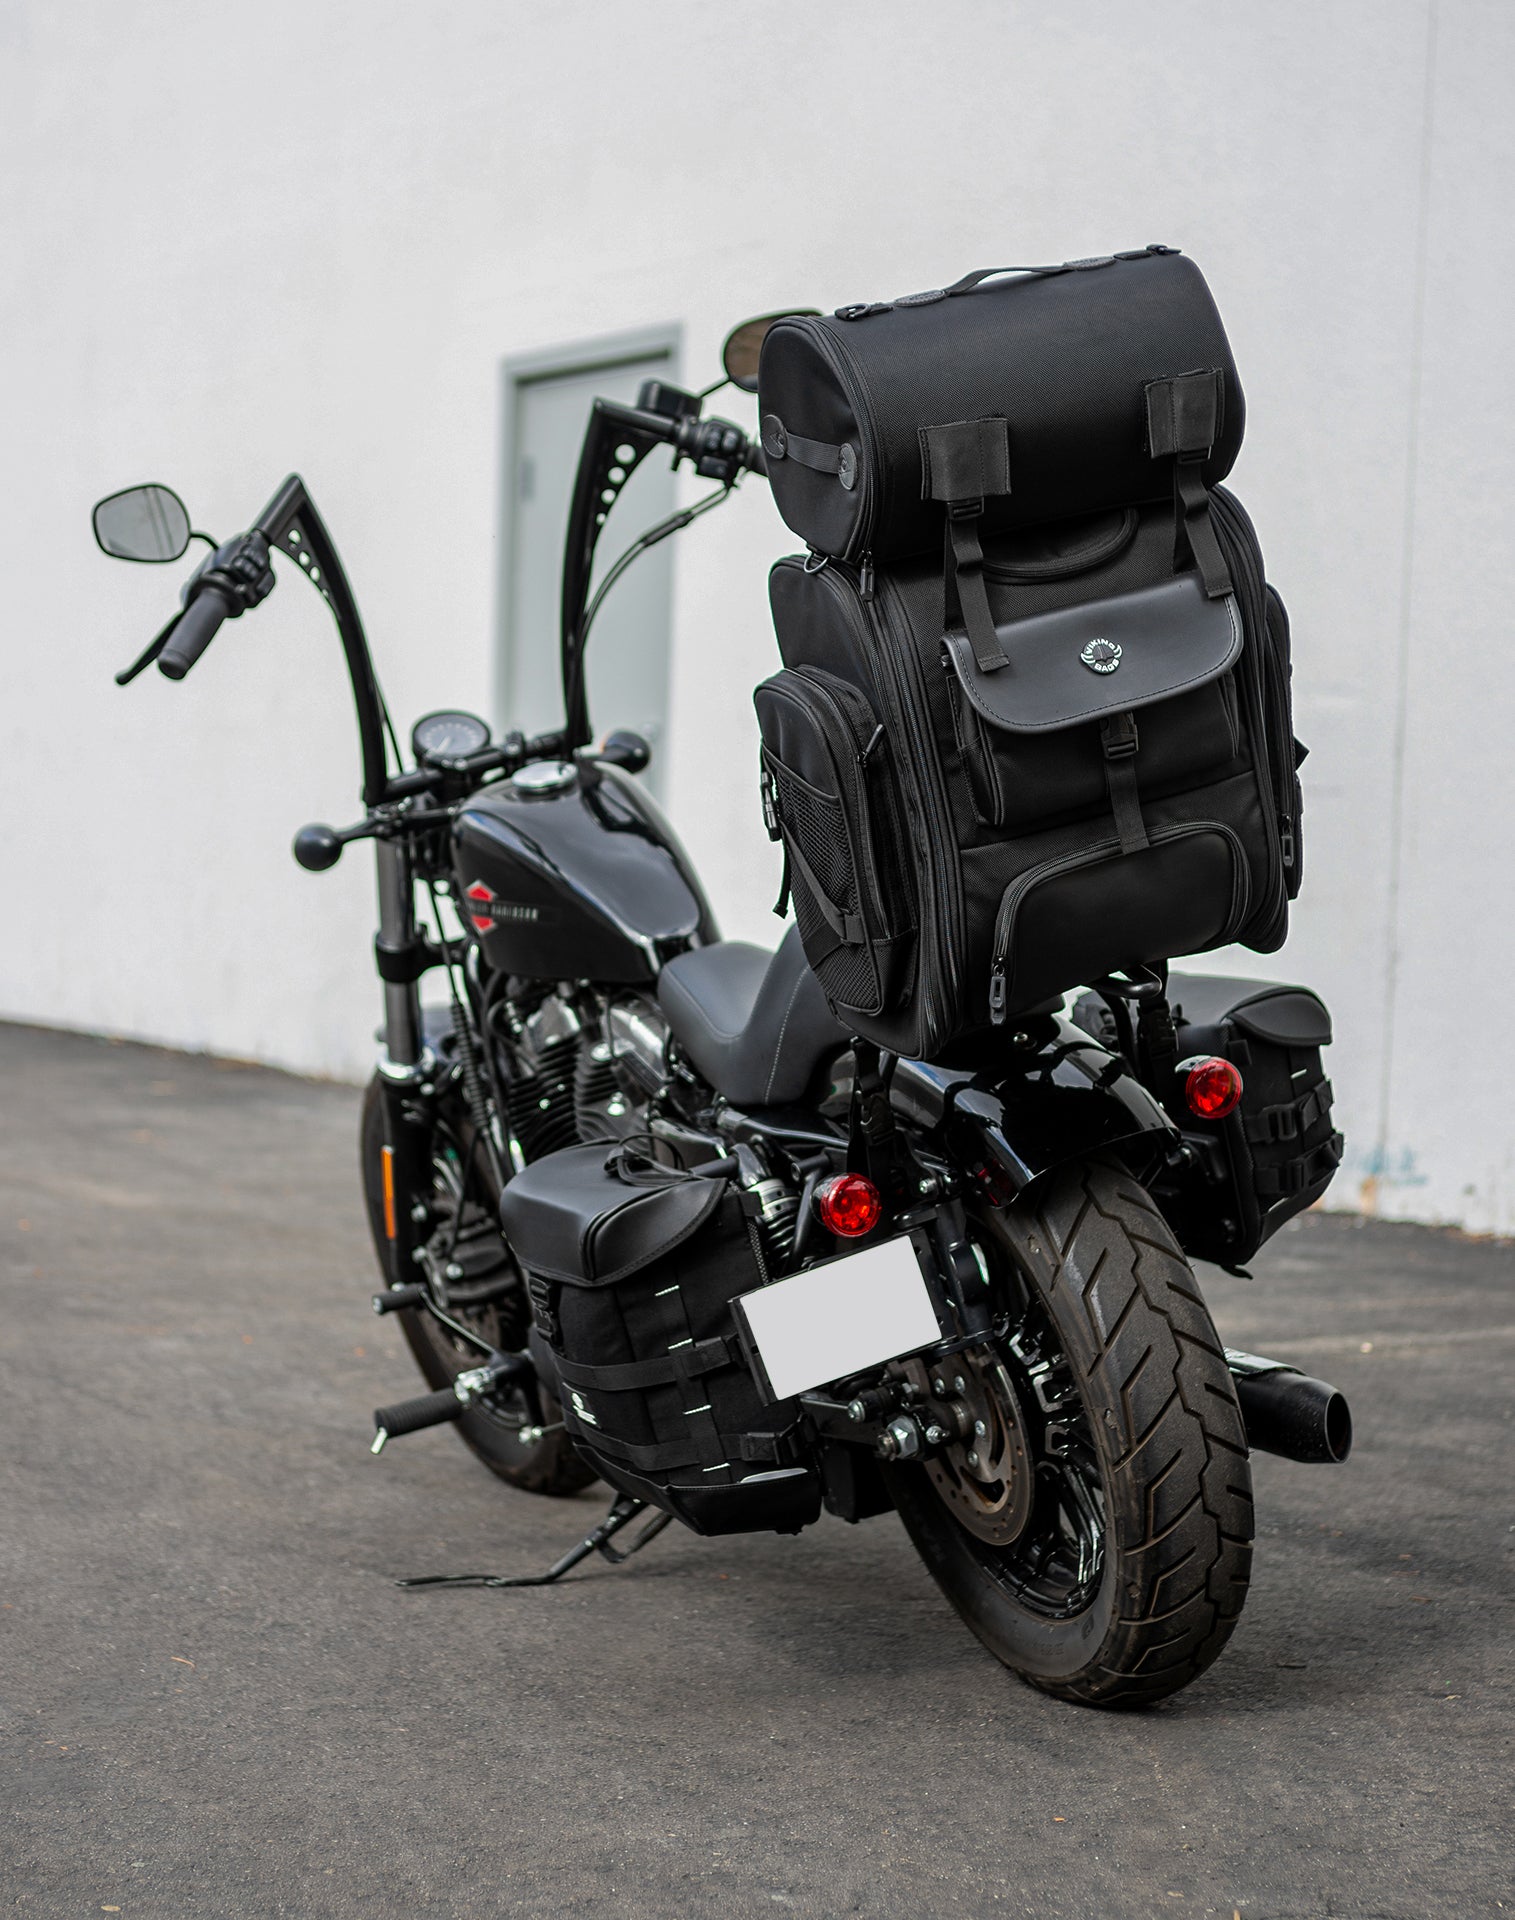 52L - Dwarf XL Indian Motorcycle Sissy Bar Bag